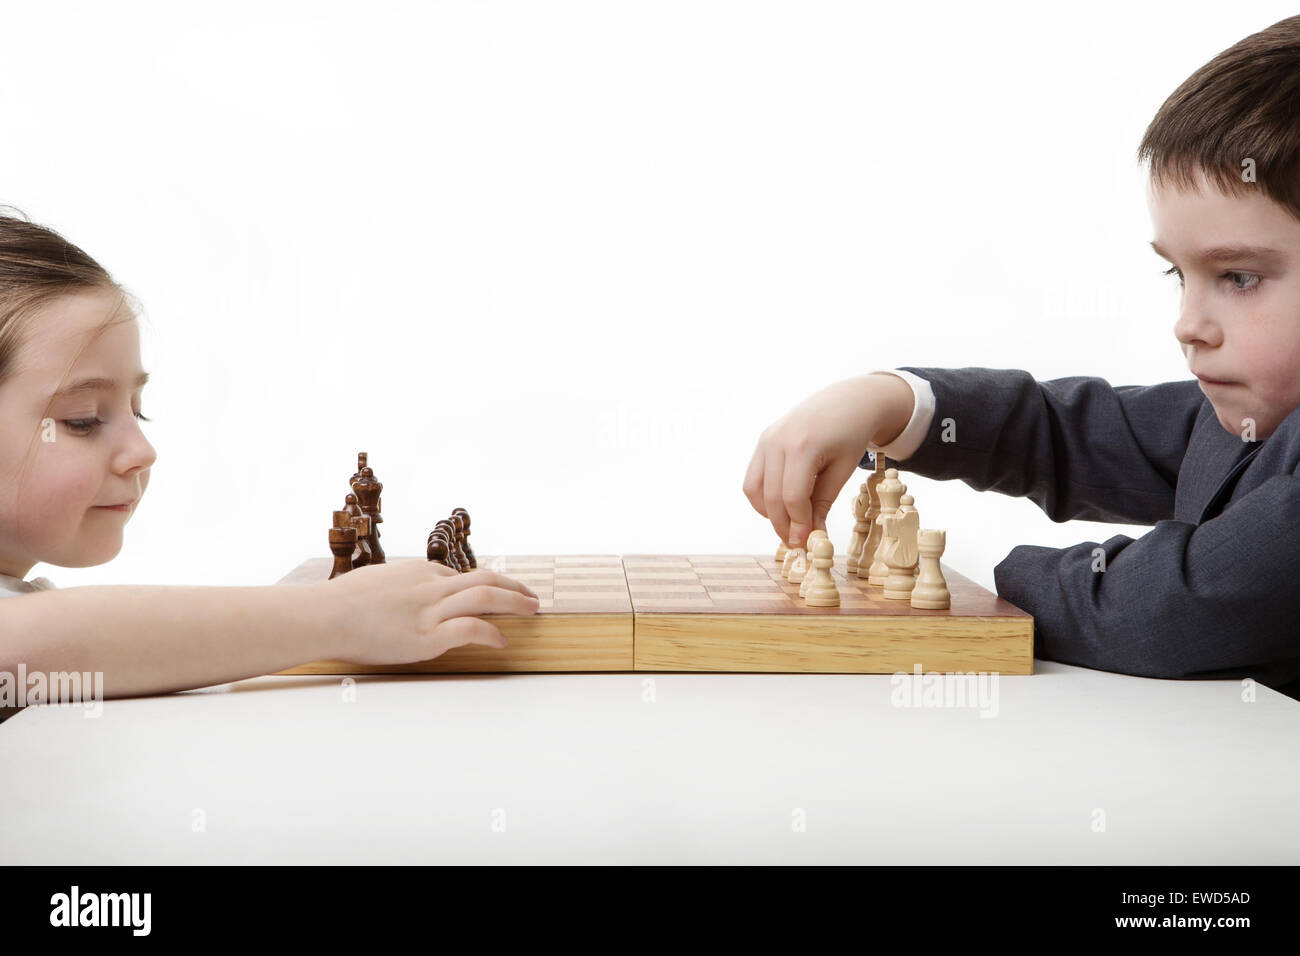 Deux enfants jouant aux échecs ensemble Banque D'Images